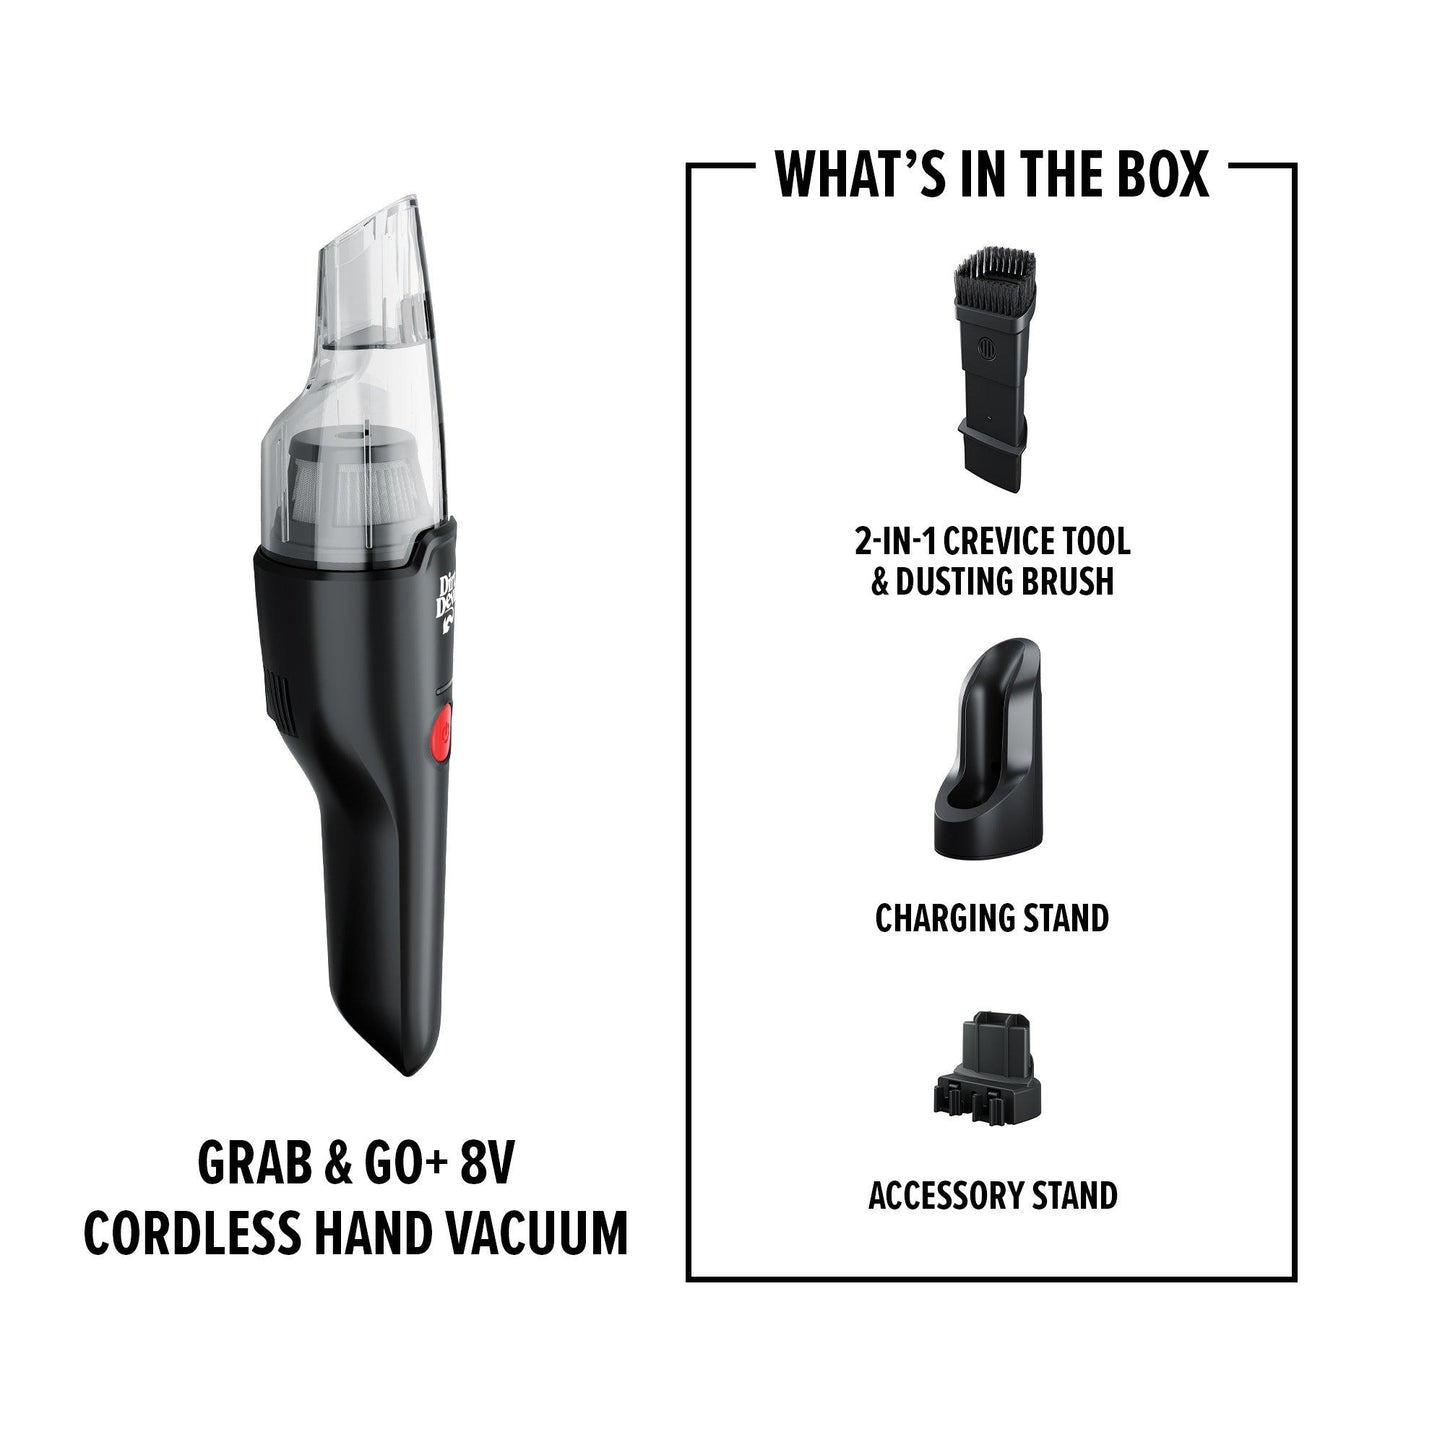 Grab & Go+ 8V Cordless Hand Vacuum